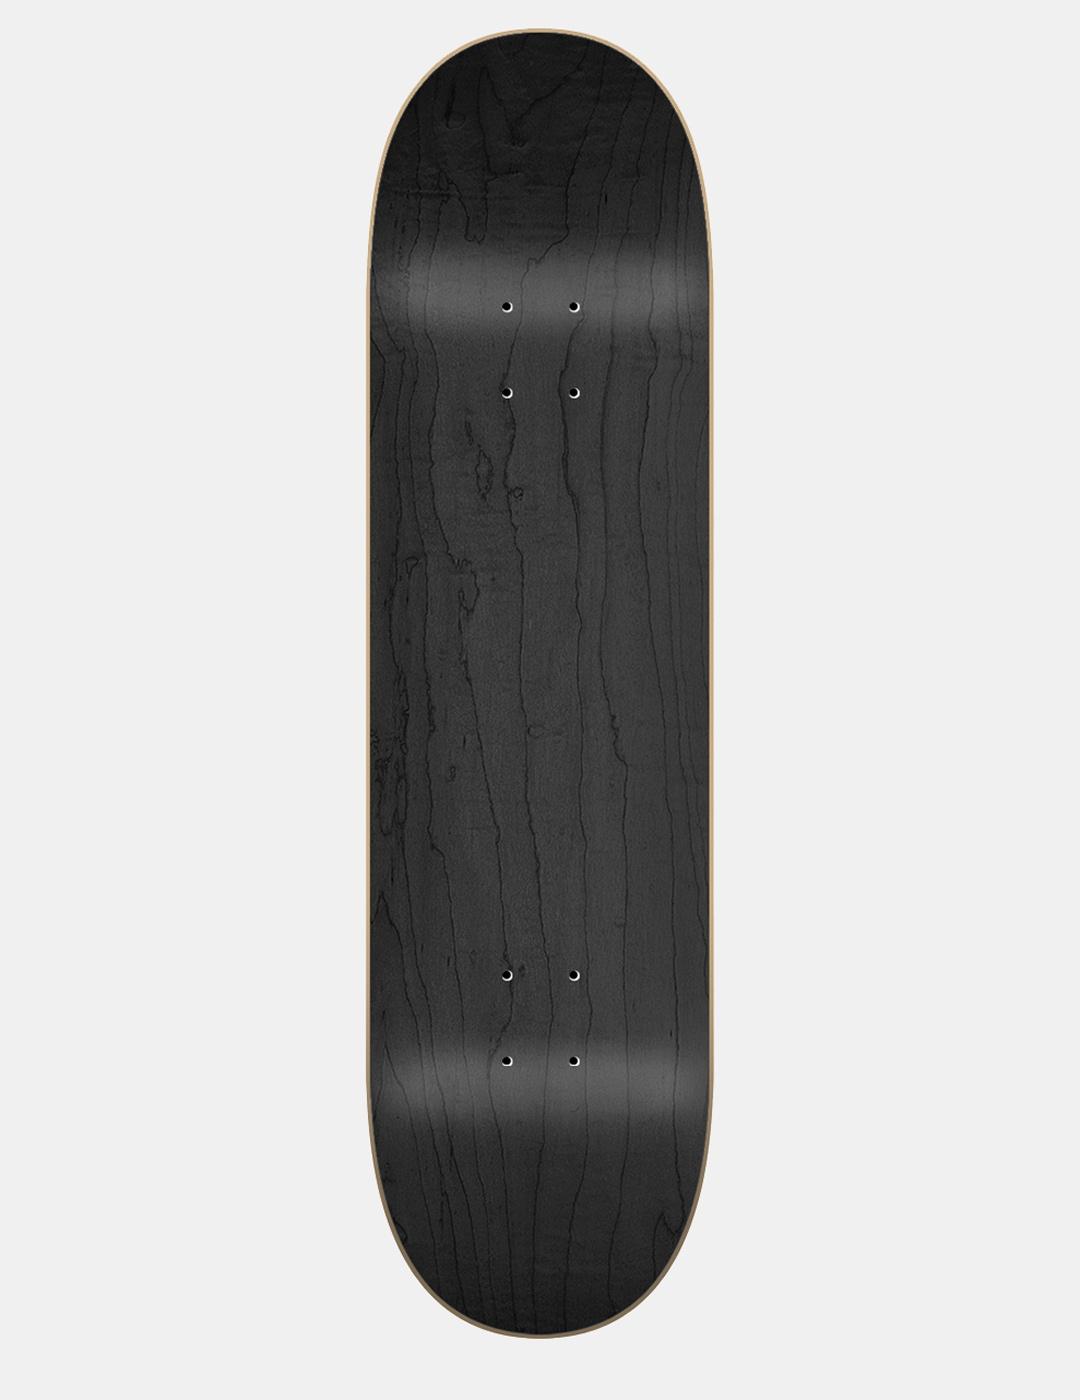 Tabla Skate JART DENSE 8.0' x 31.44' HC